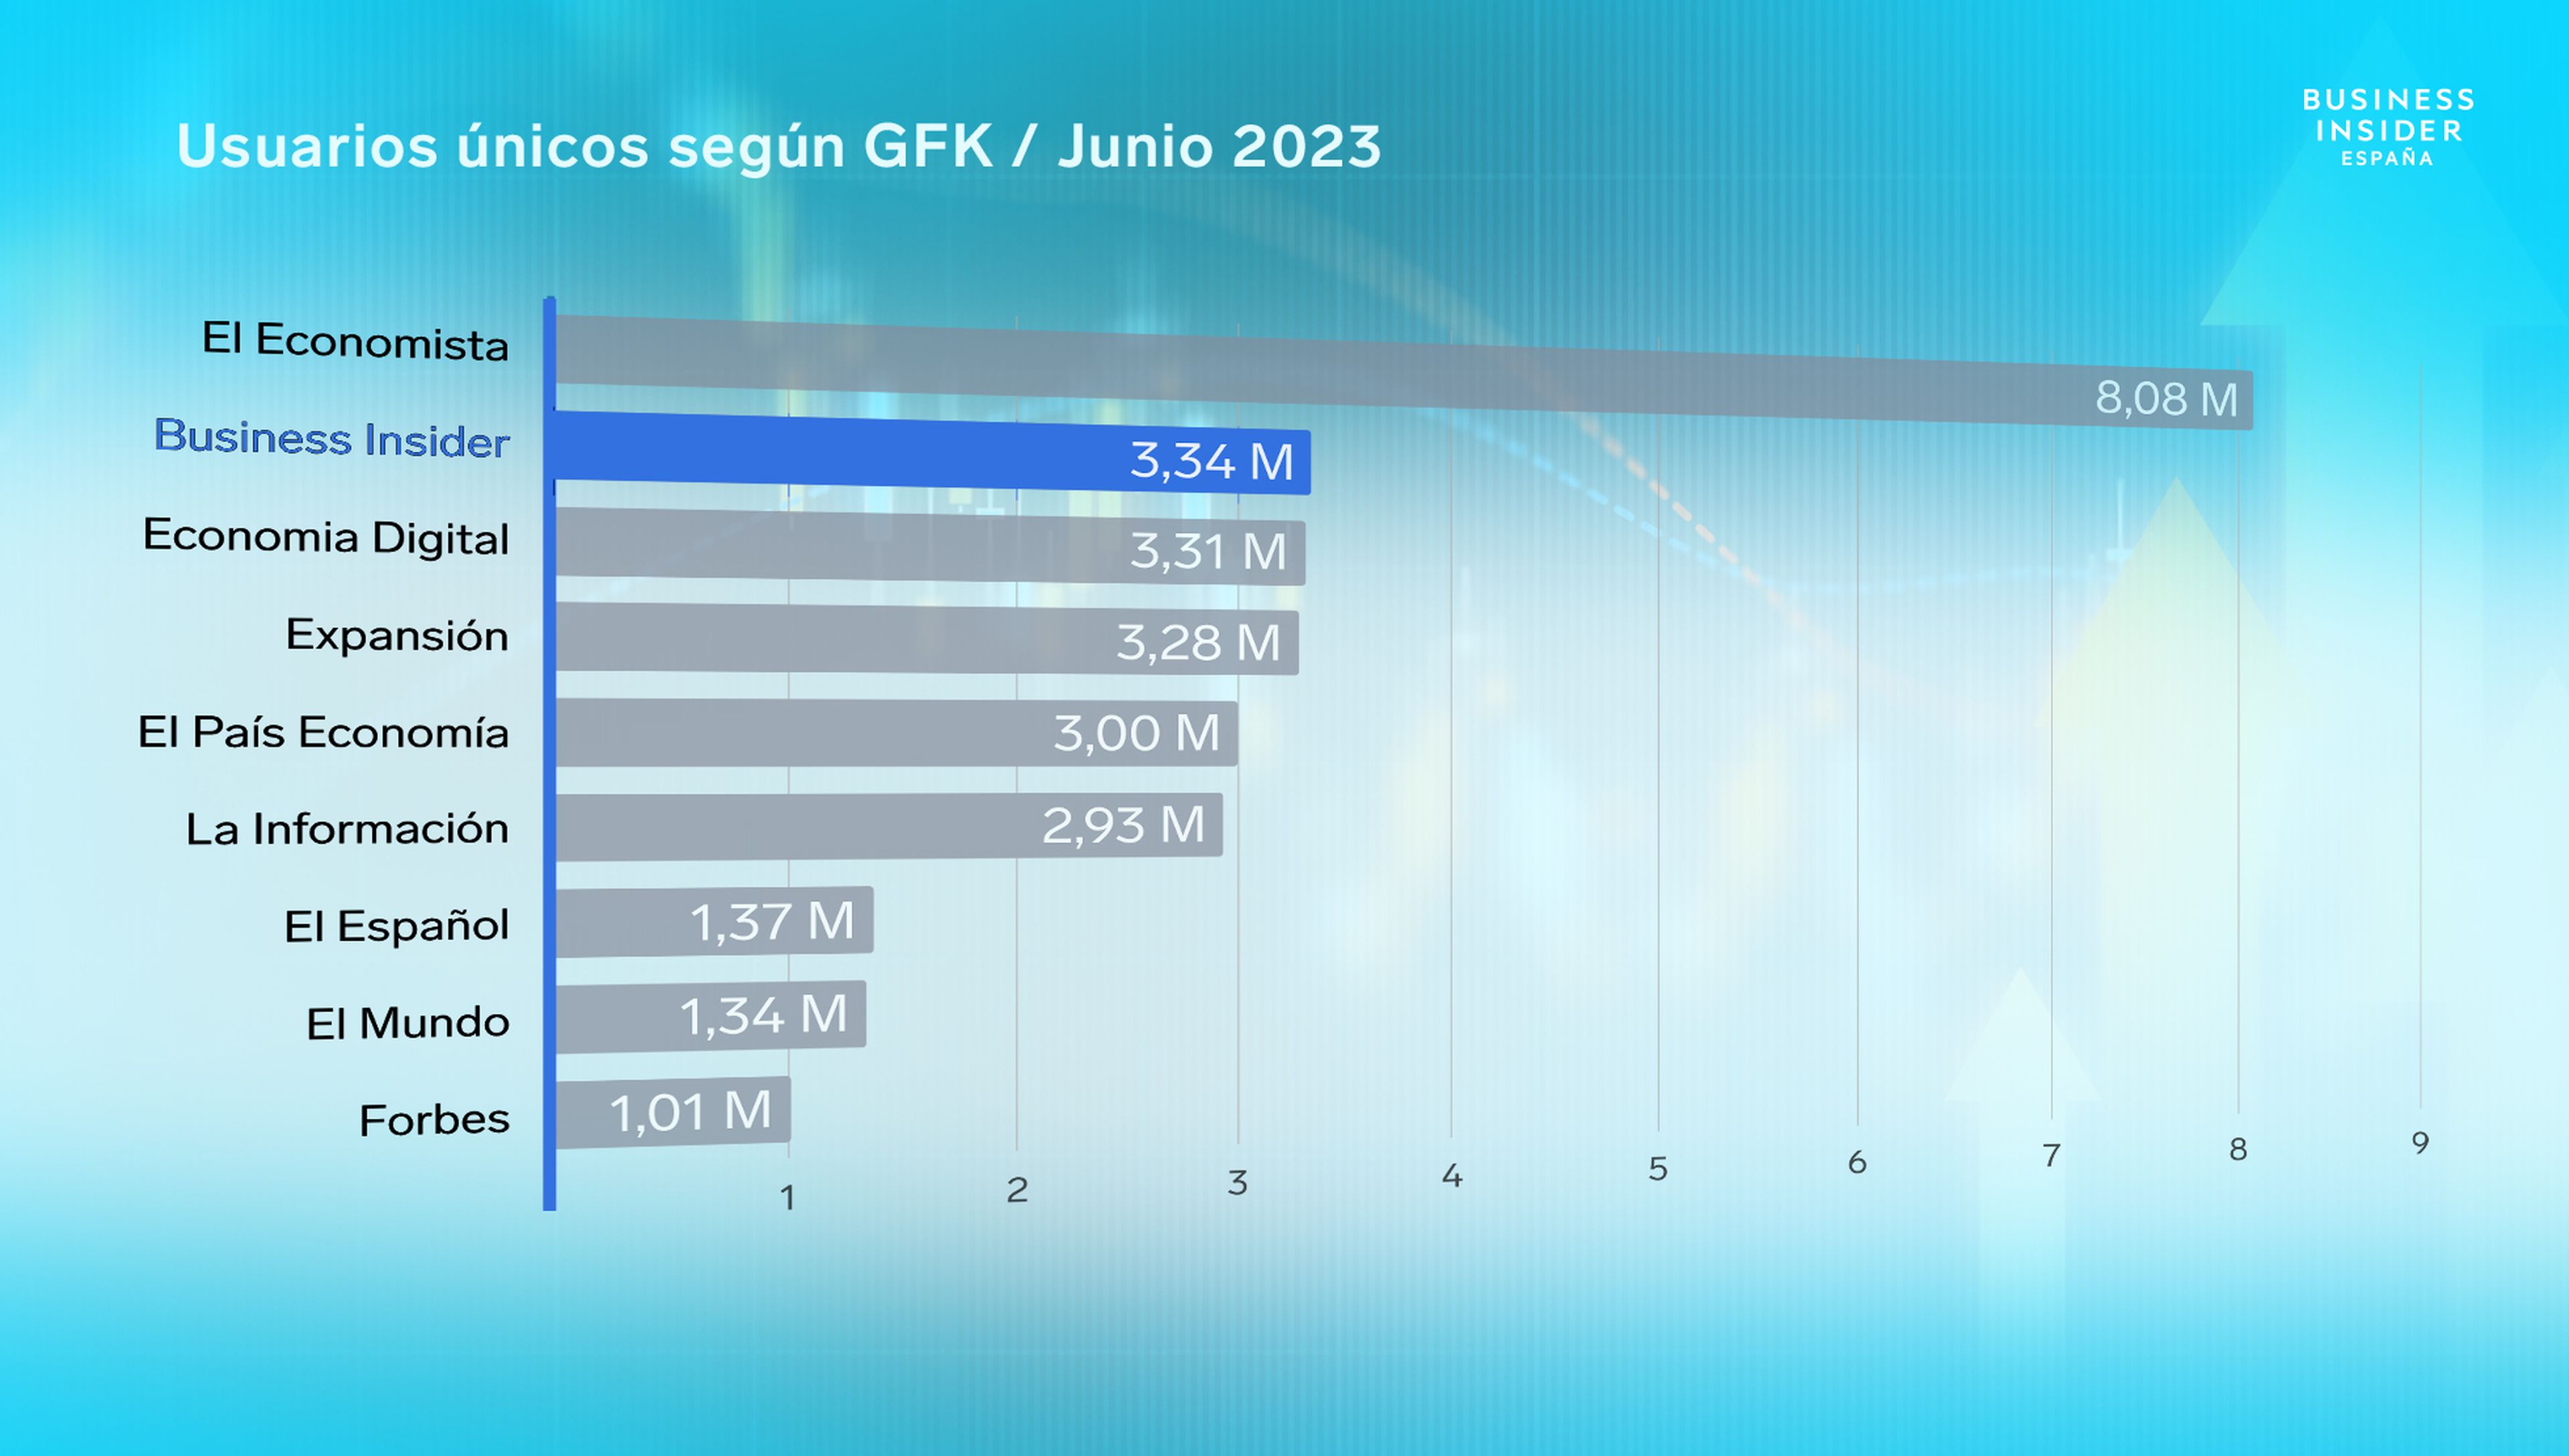 Ranking GFK usuarios únicos junio 2023: información económica